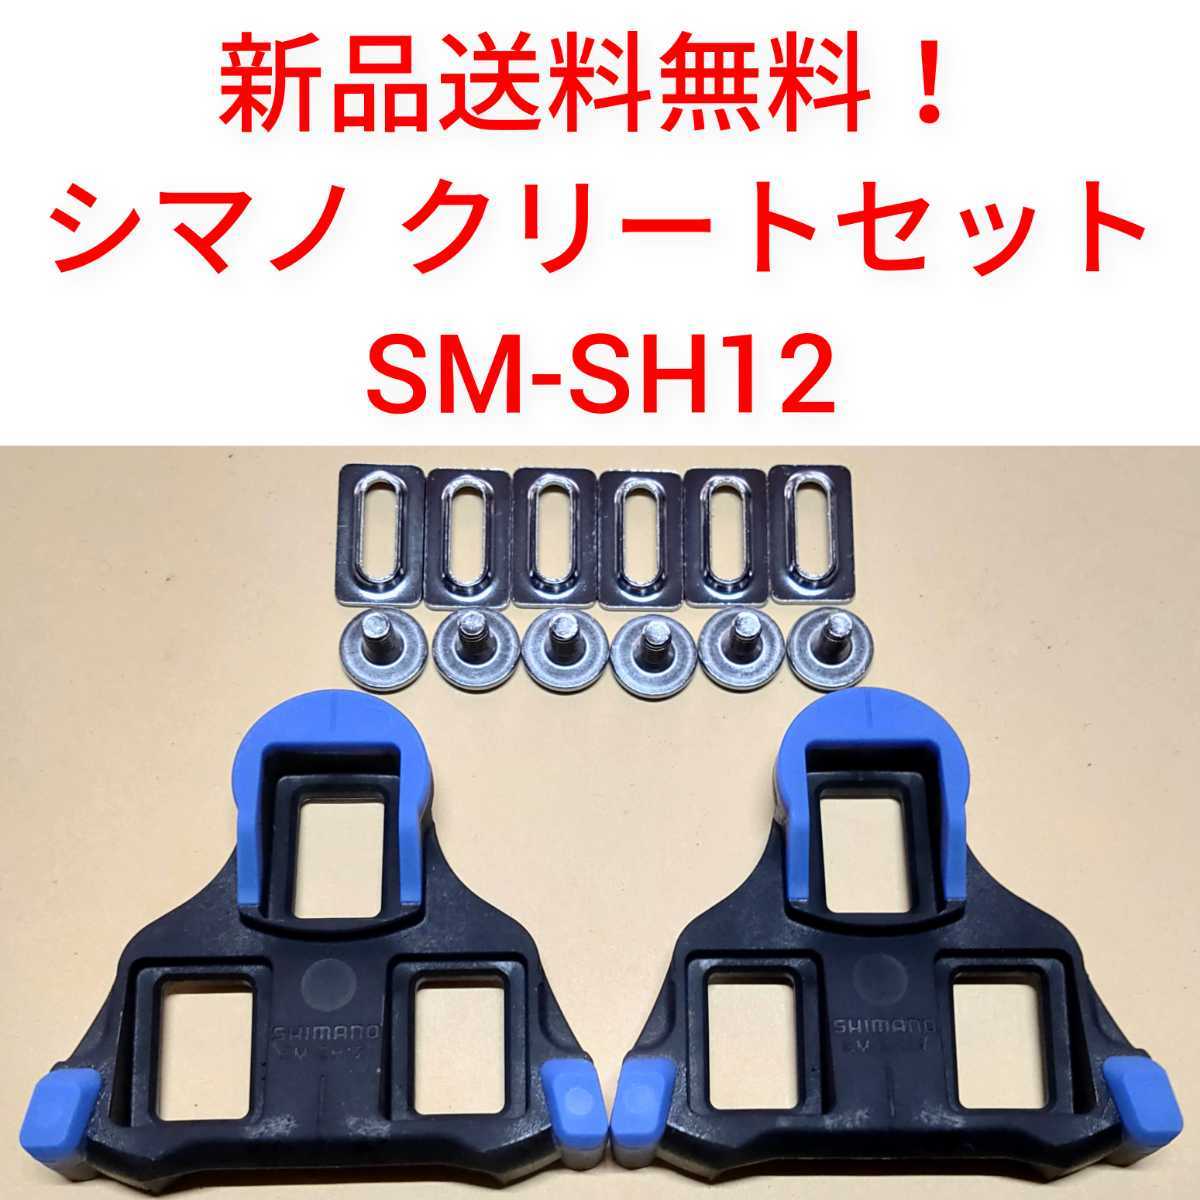 【新品送料無料】 クリート SM-SH12 シマノ　shimano SPD-SL 自転車 SMSH12 ペダル 正規品 ロードバイク shimano 部品 _画像1